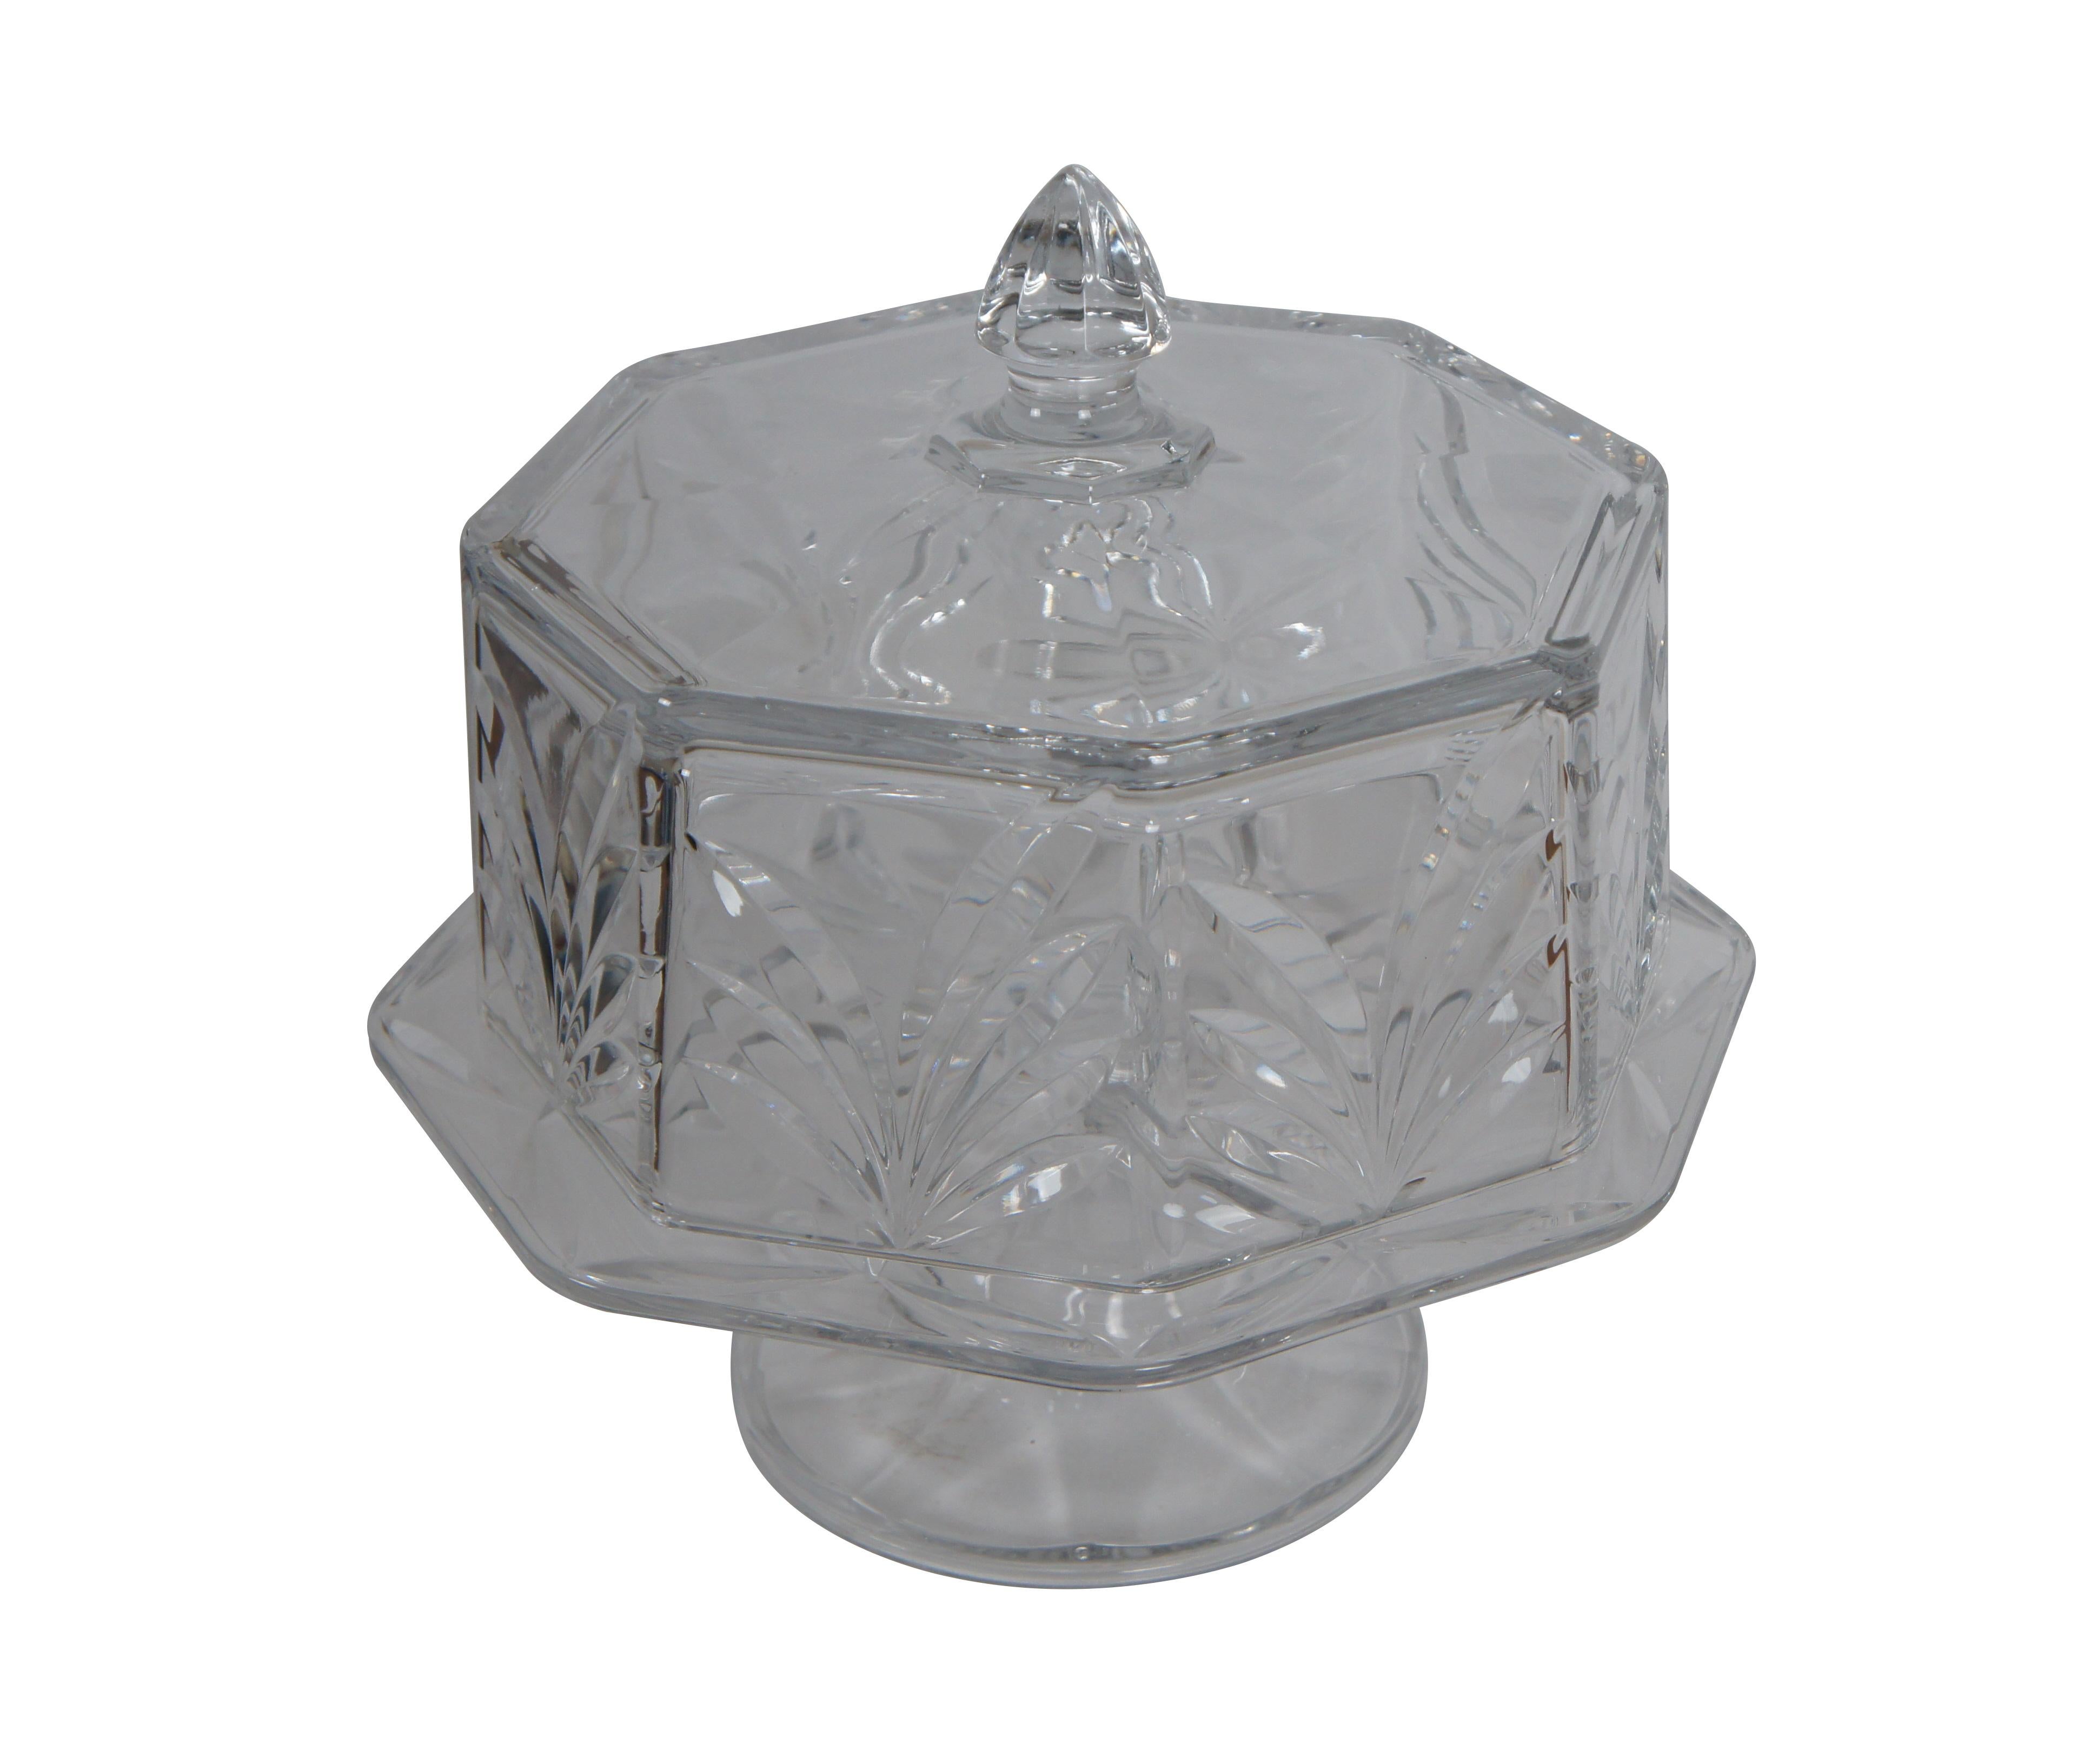 Kuchenständer aus schwerem geschliffenem Kristall in achteckiger Form mit gewölbter Spitze und Fuß.

Abmessungen:
13,5